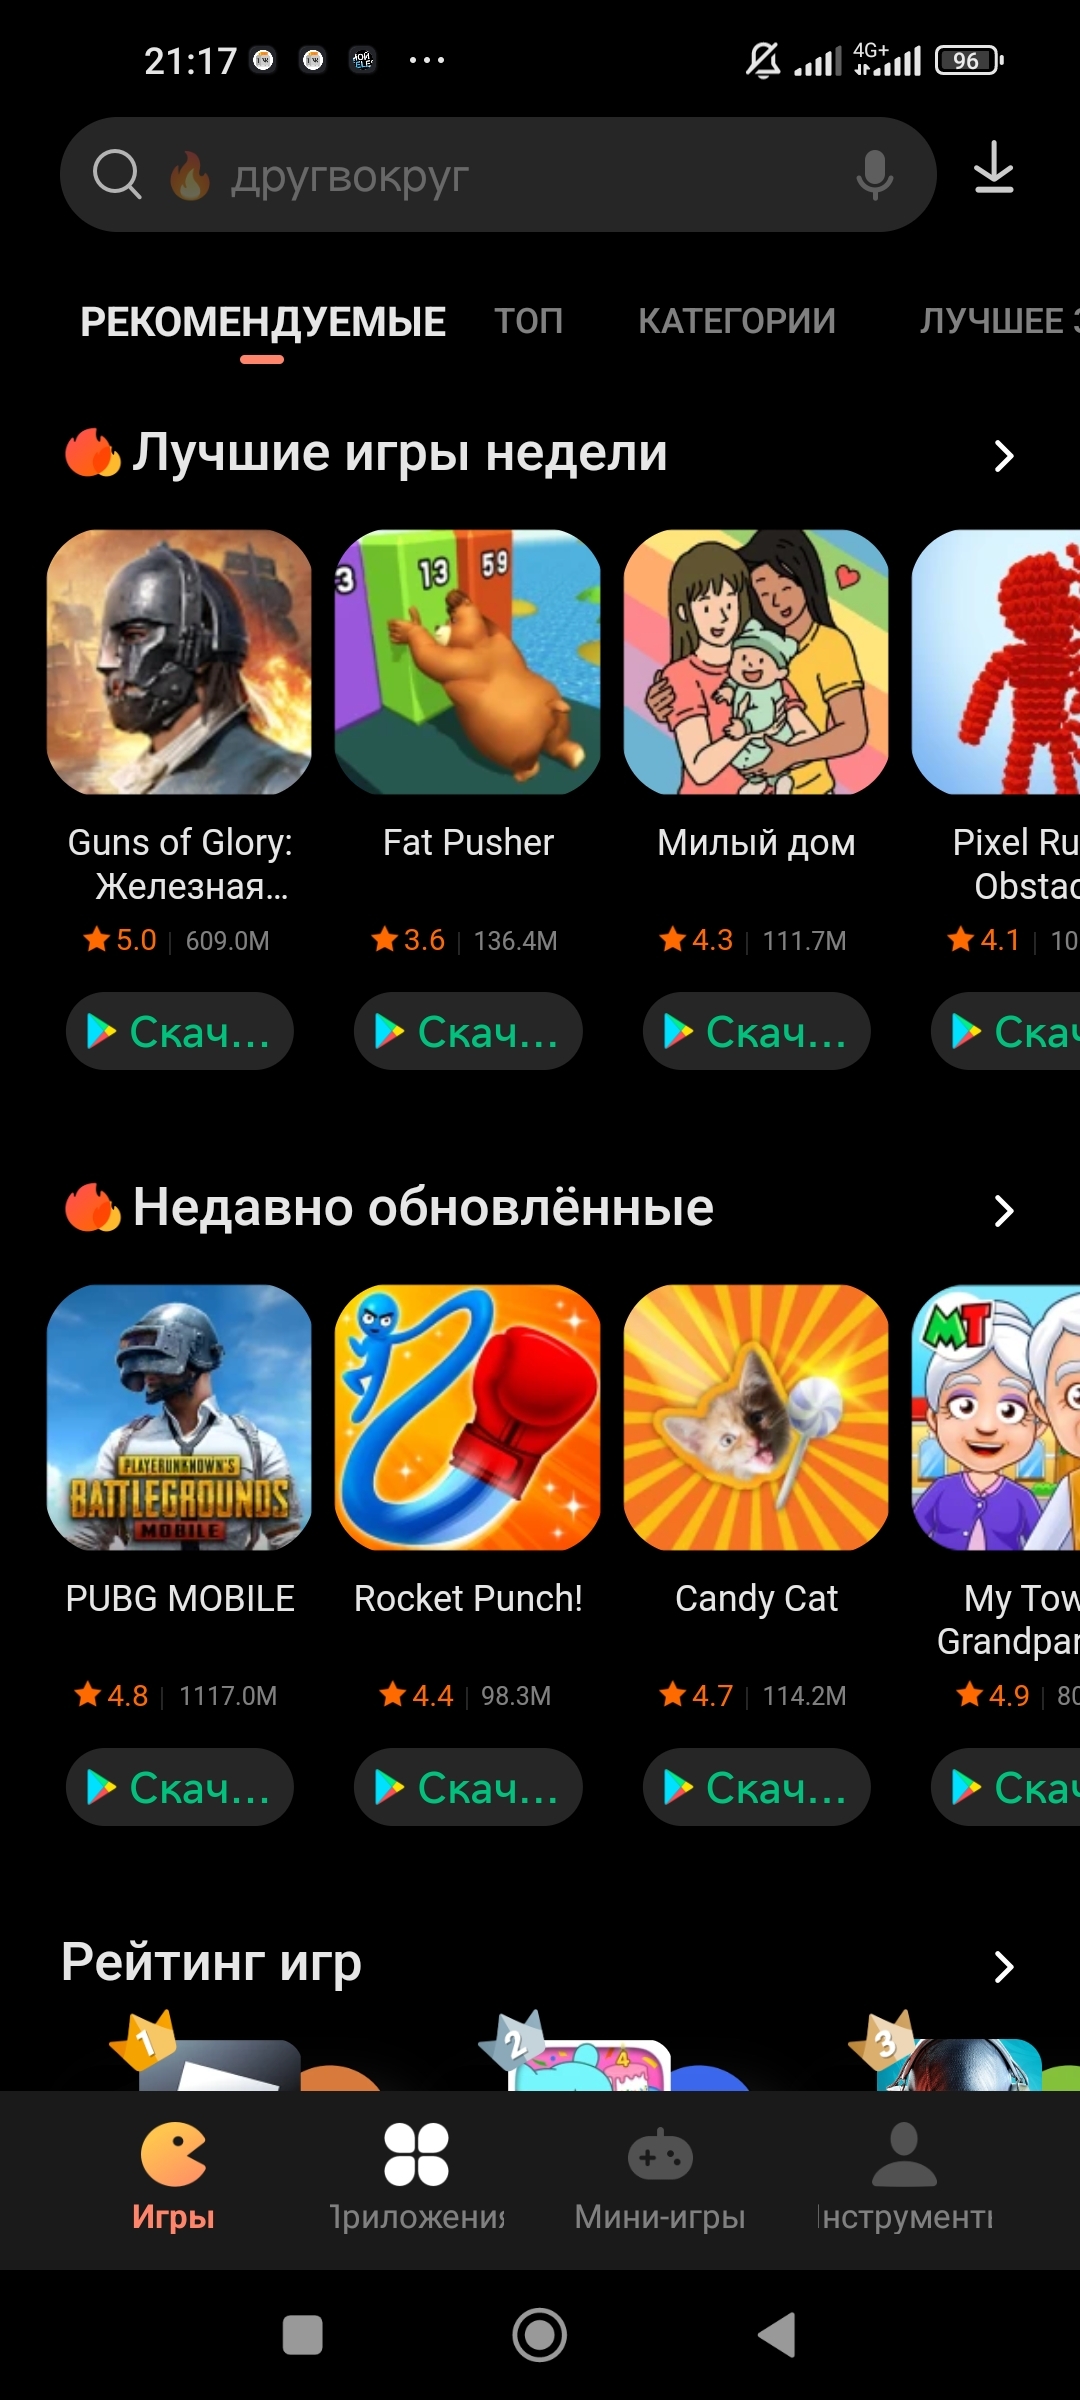 Скачать телеграмм бесплатно на русском на андроид с плей маркета фото 81